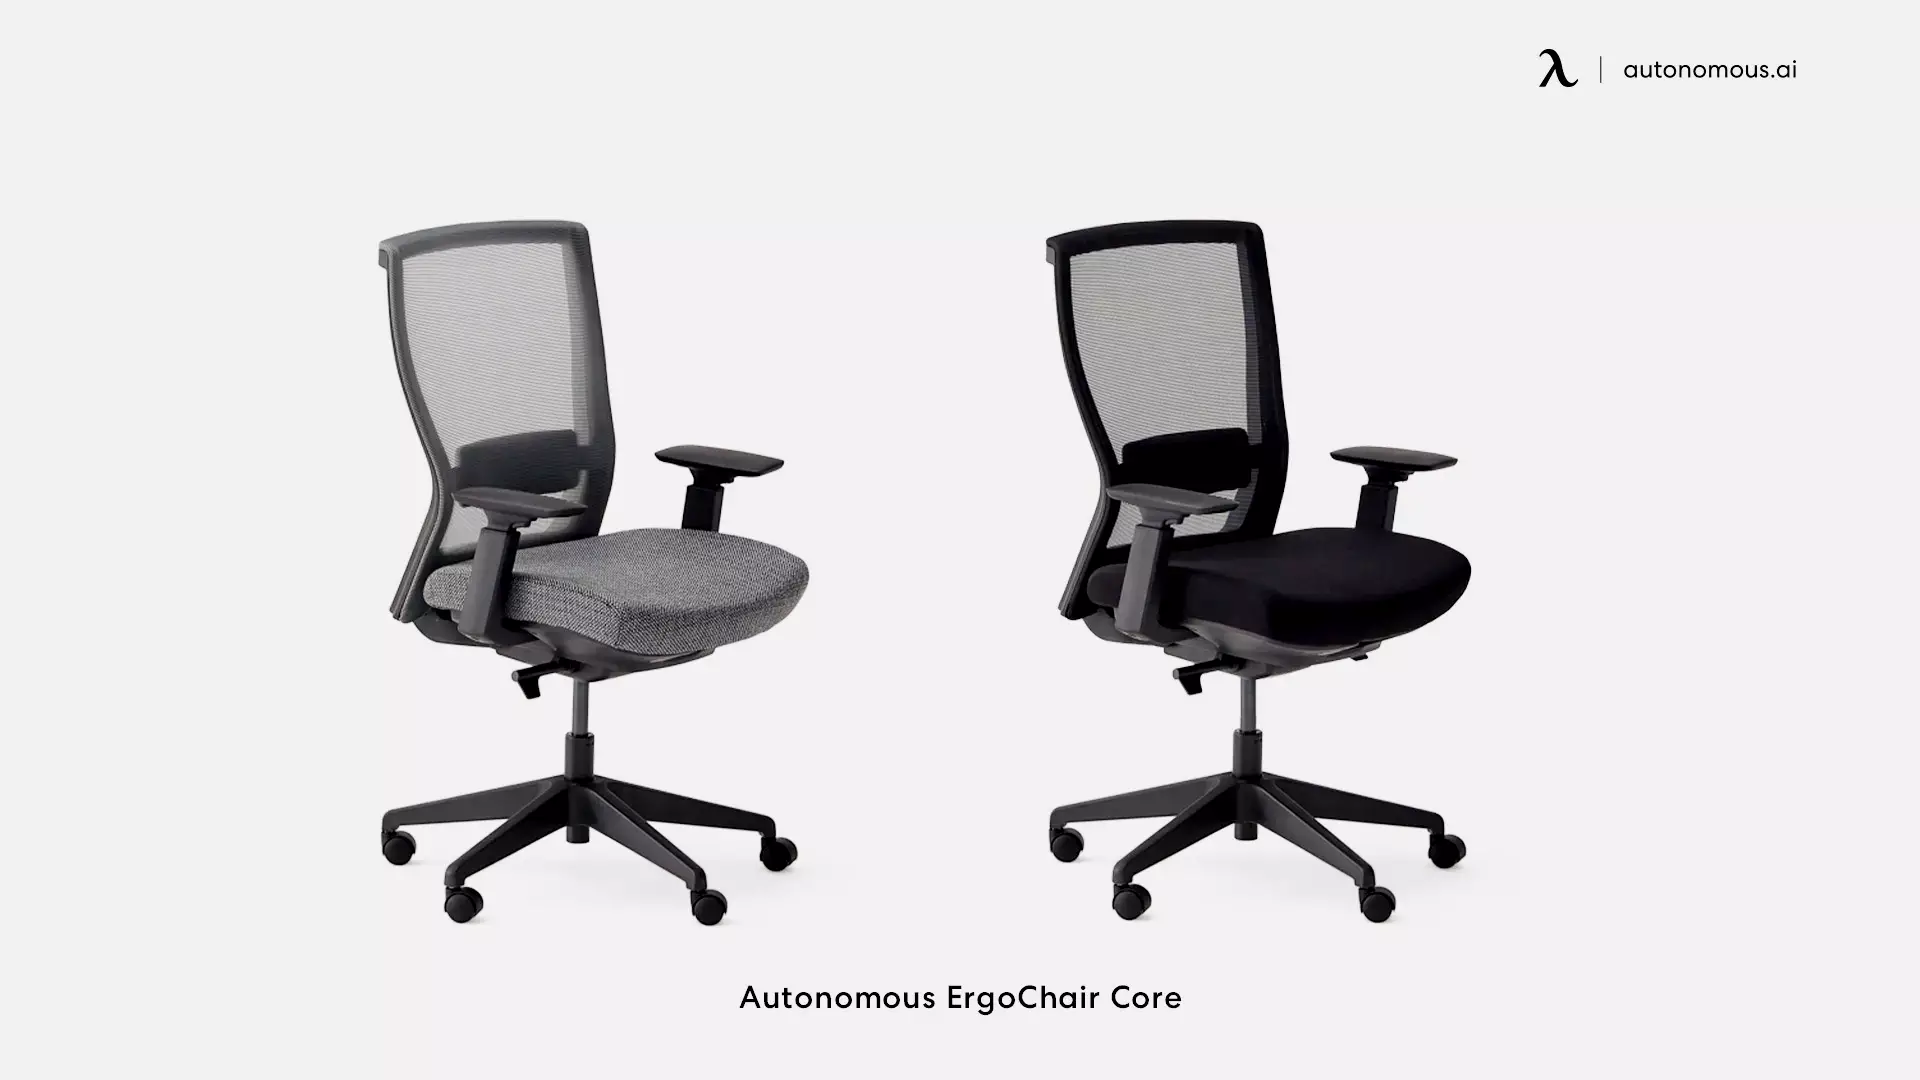 ErgoChair Core types of chair